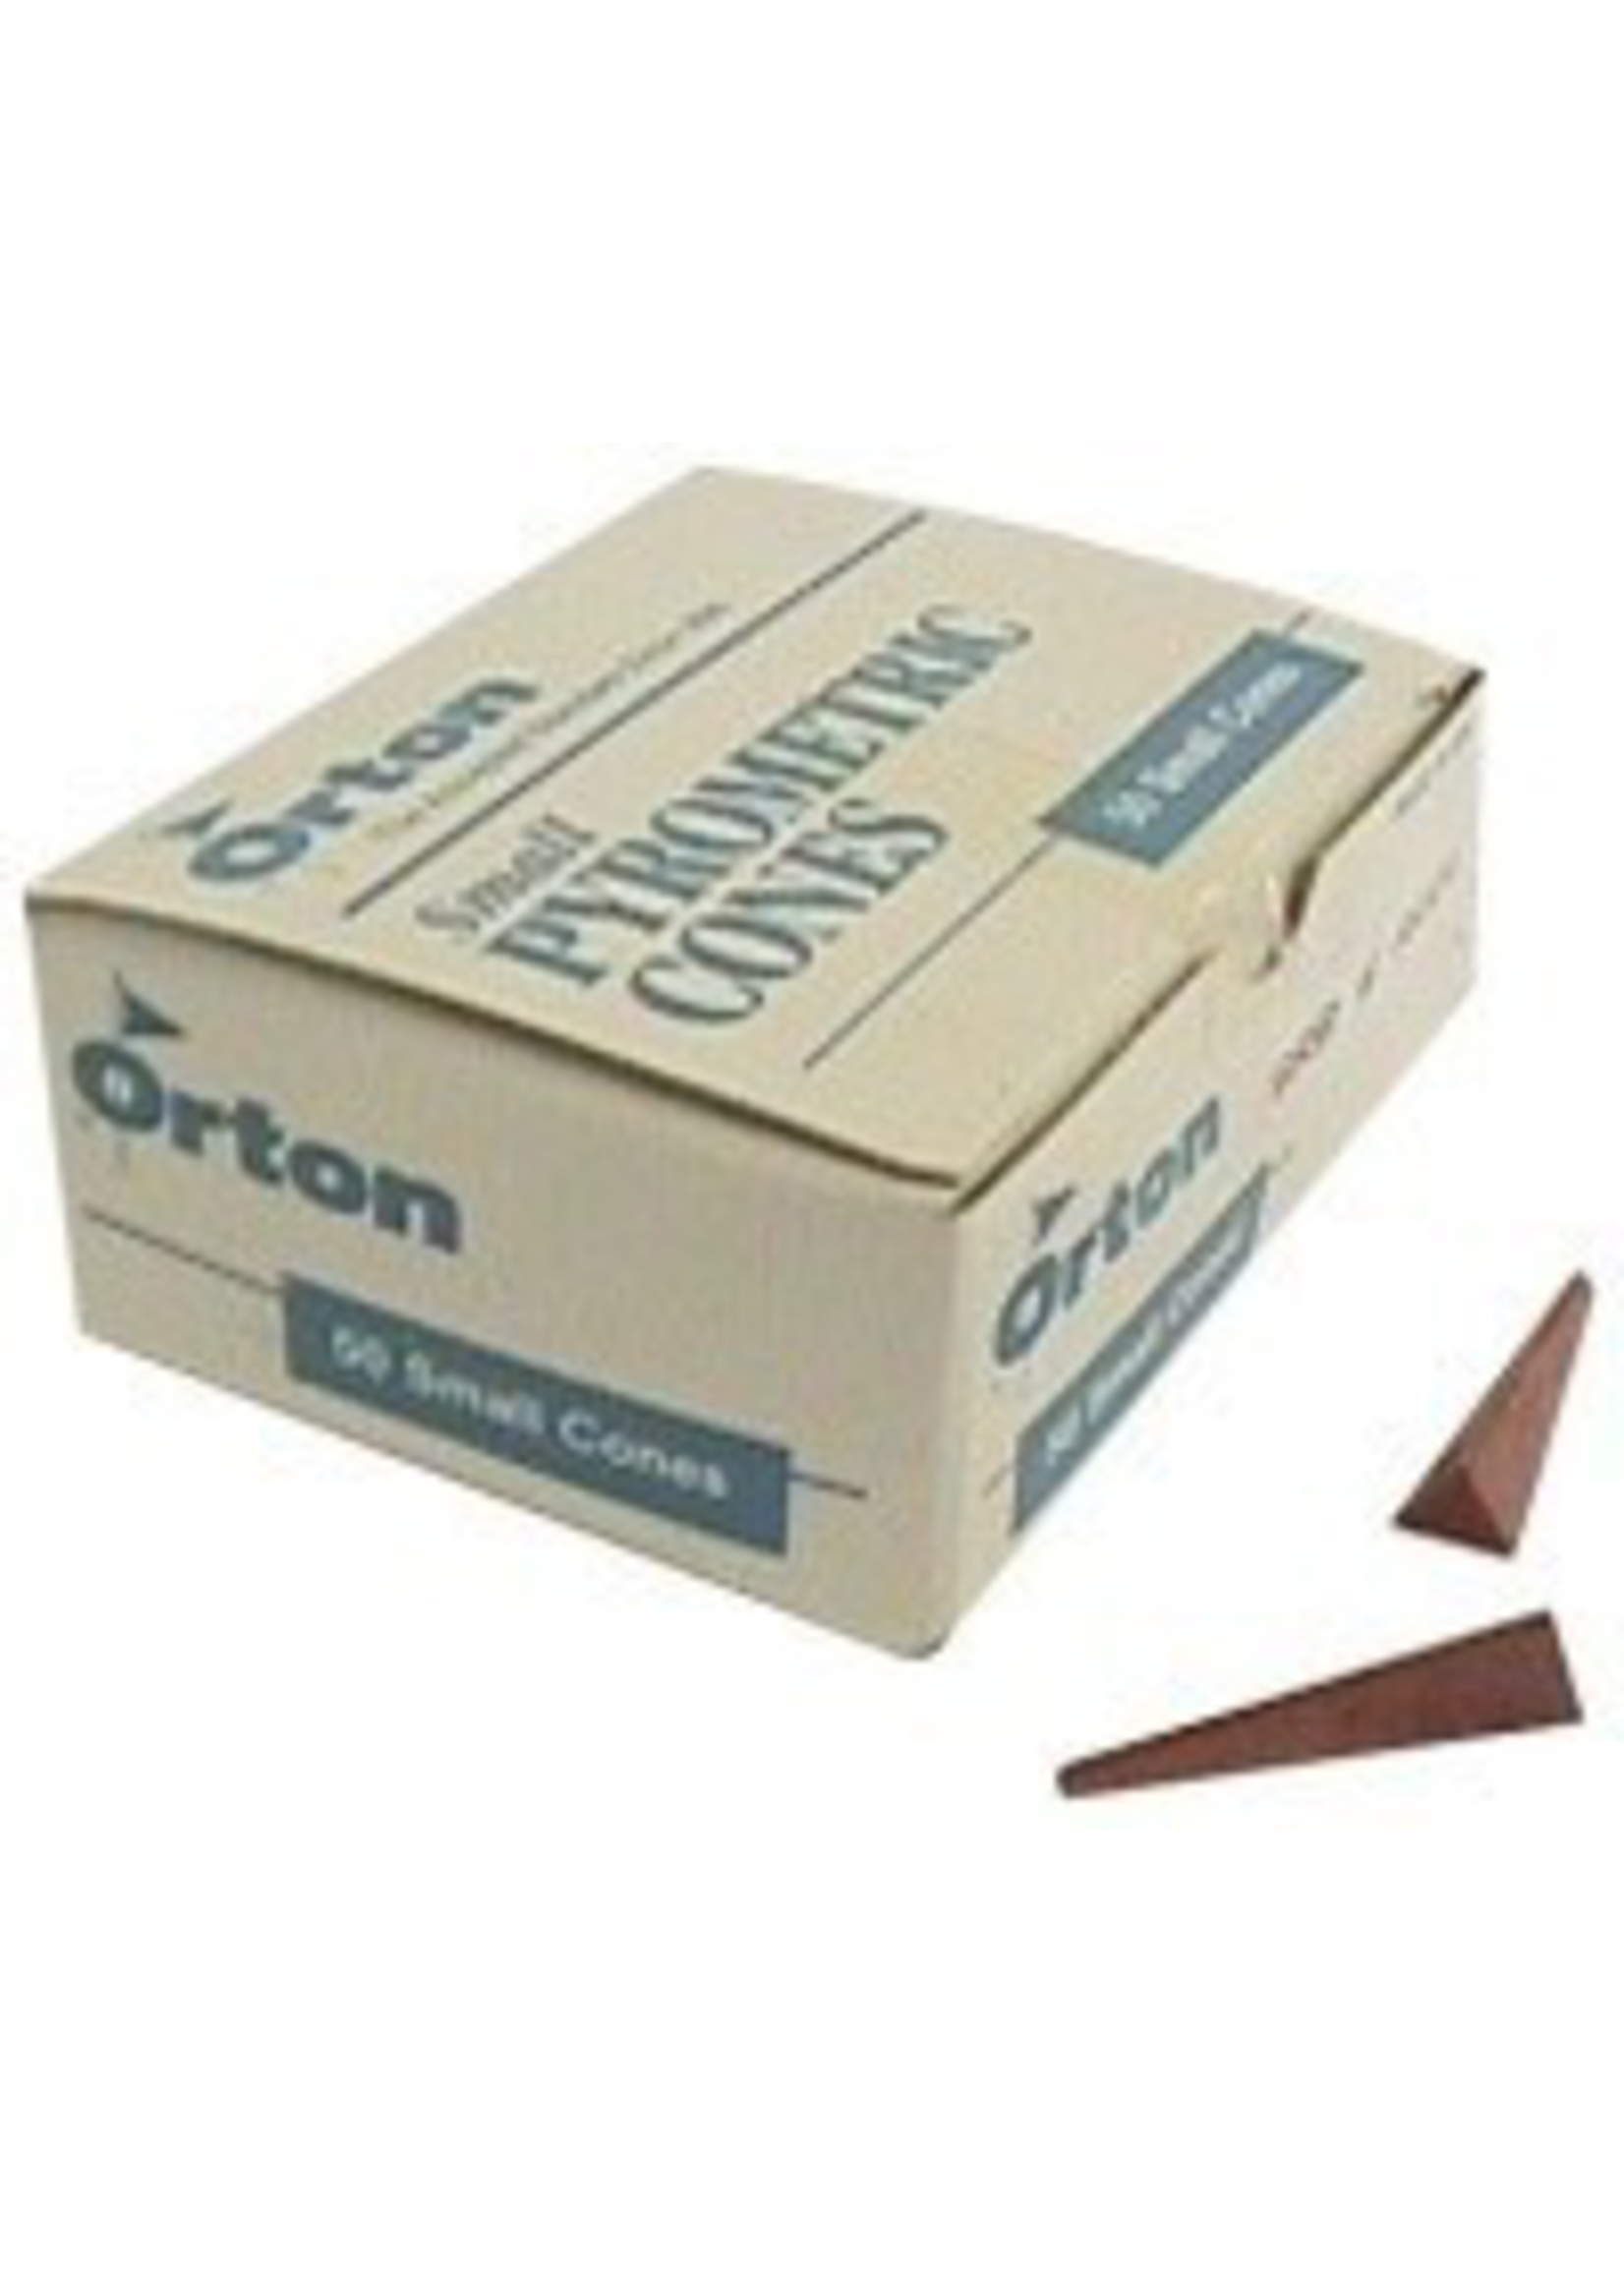 Orton small cone 9 (x10)